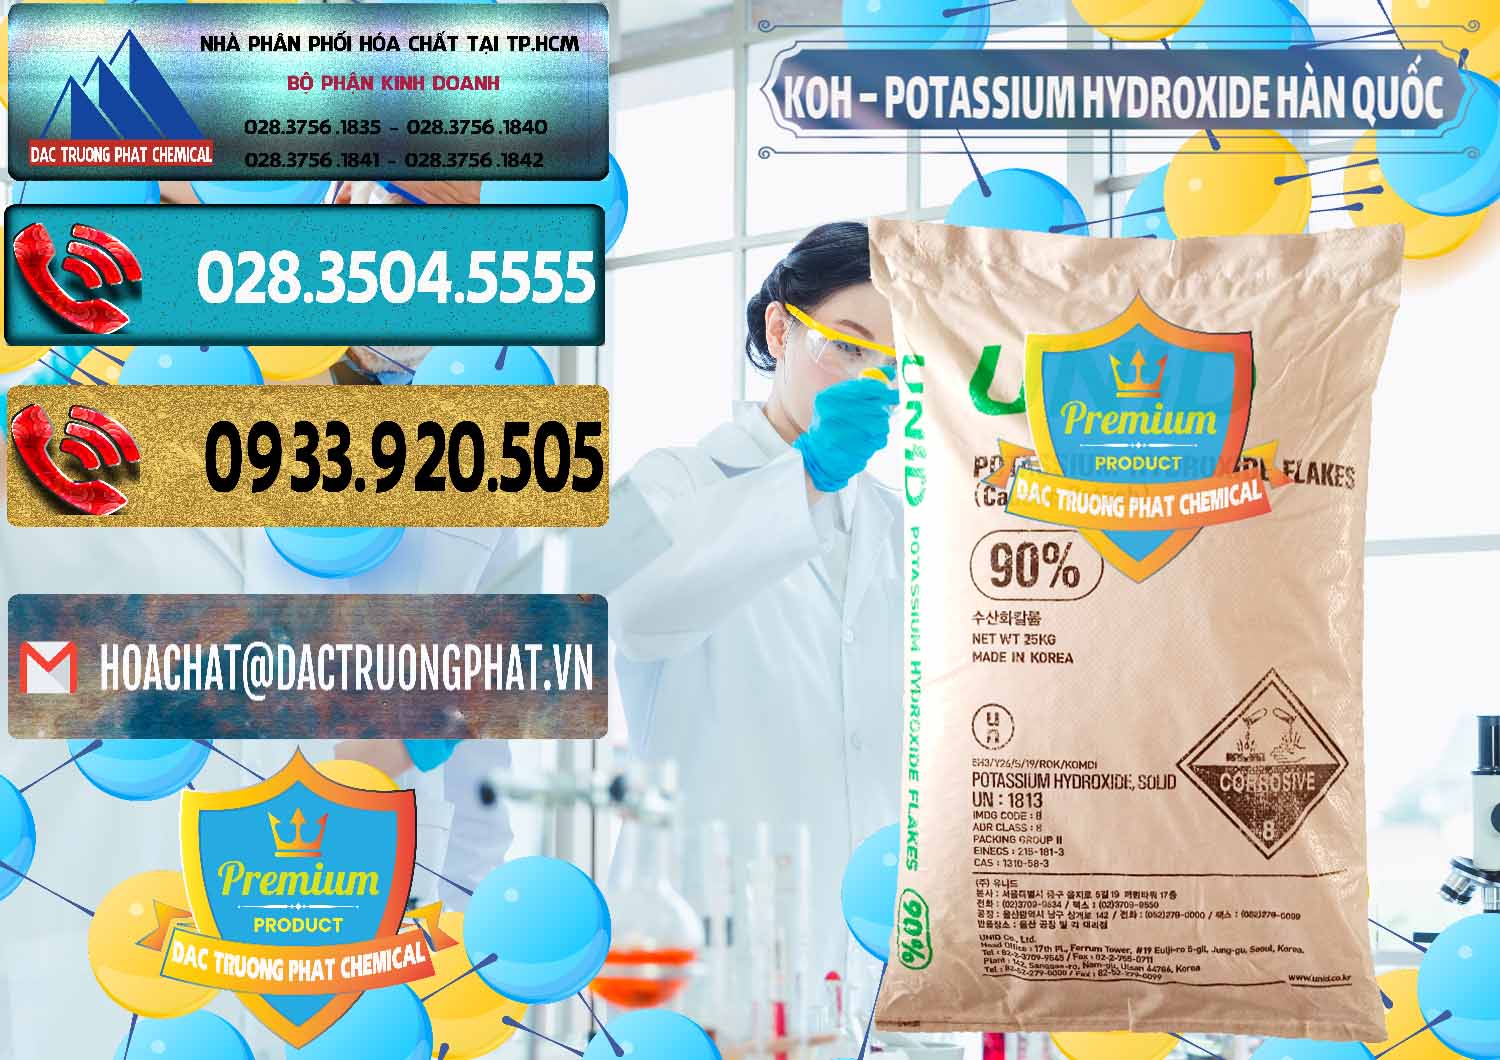 Cty chuyên cung cấp - bán KOH ( 90%) – Potassium Hydroxide Unid Hàn Quốc Korea - 0090 - Chuyên cung cấp & phân phối hóa chất tại TP.HCM - hoachatdetnhuom.com